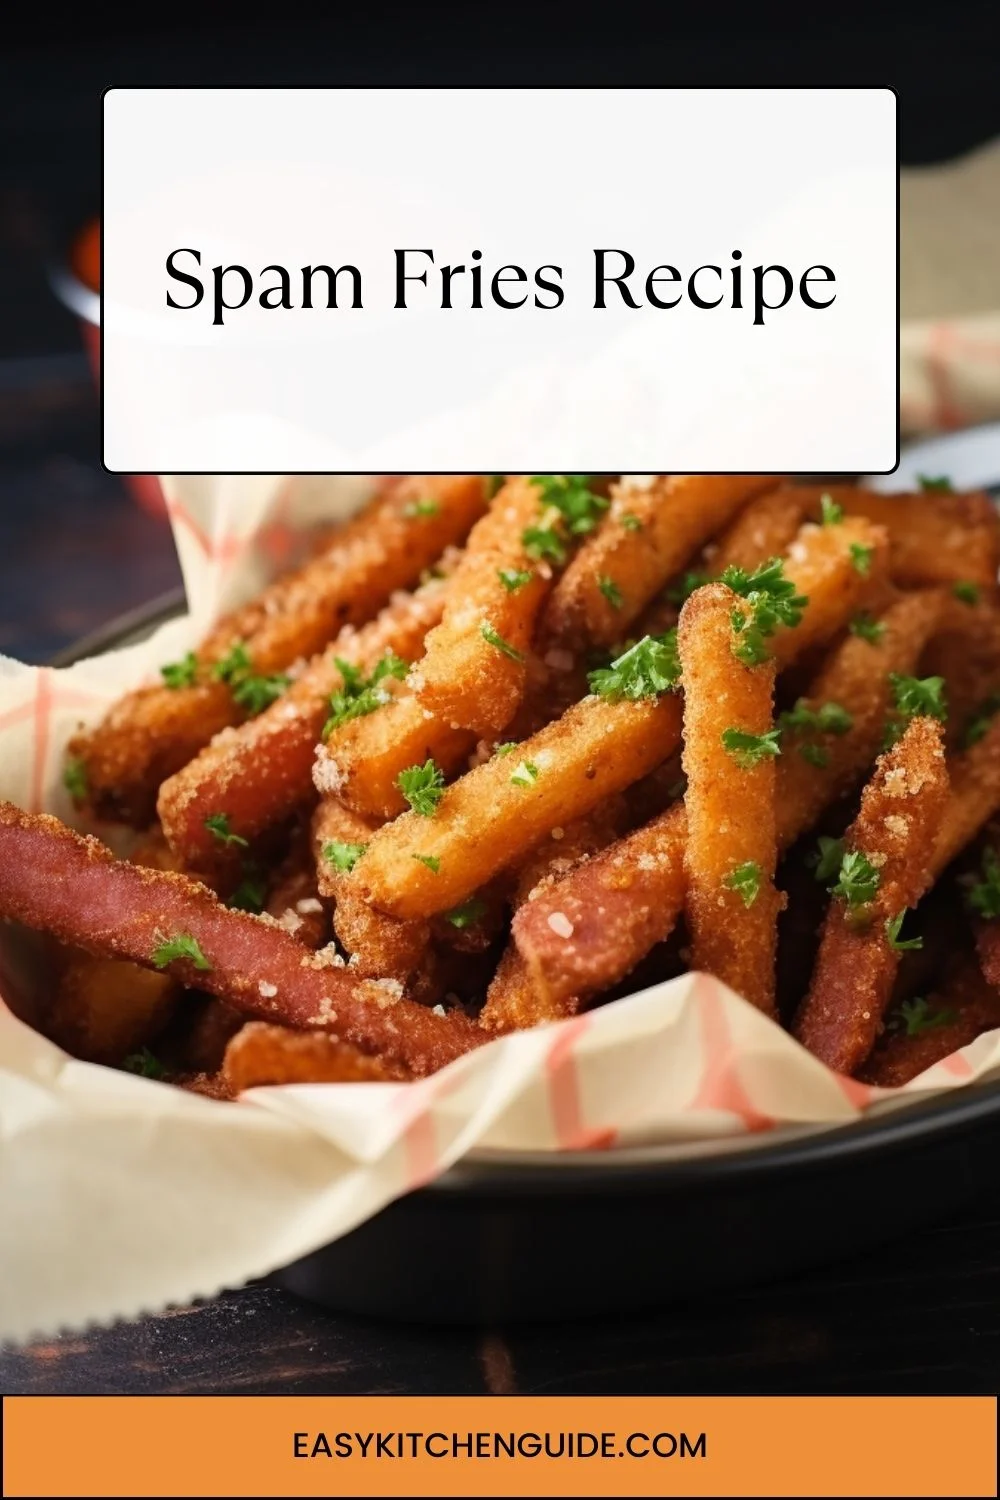 Spam Fries Recipe